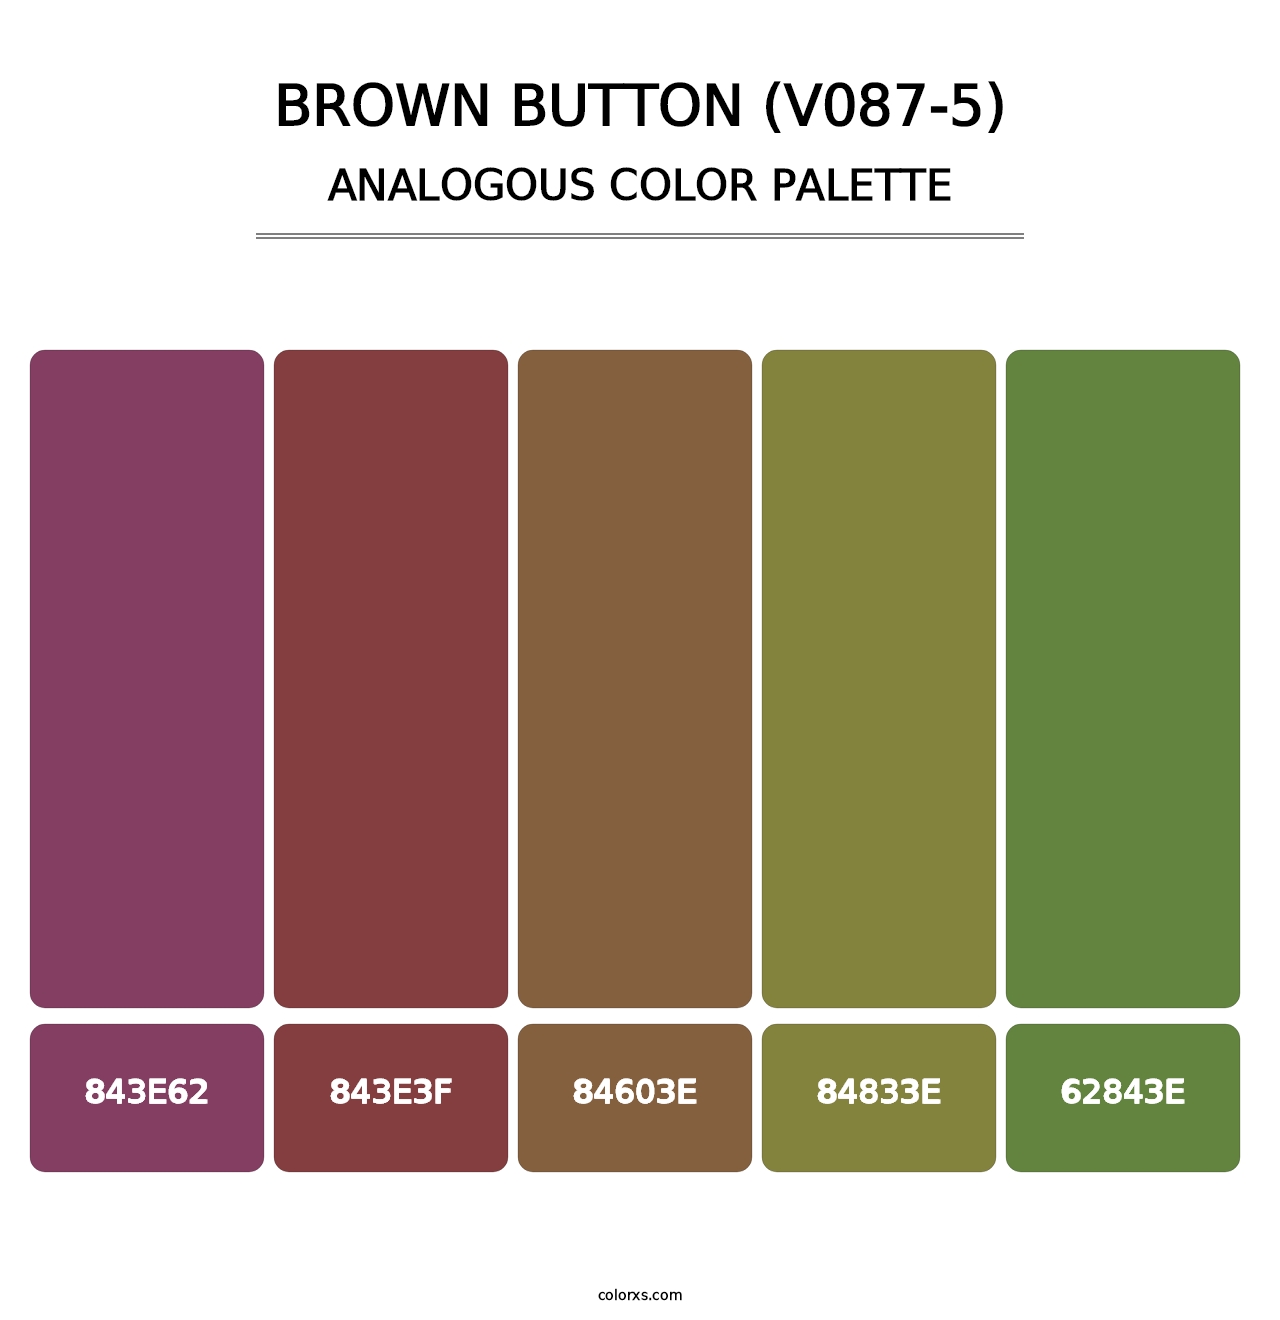 Brown Button (V087-5) - Analogous Color Palette